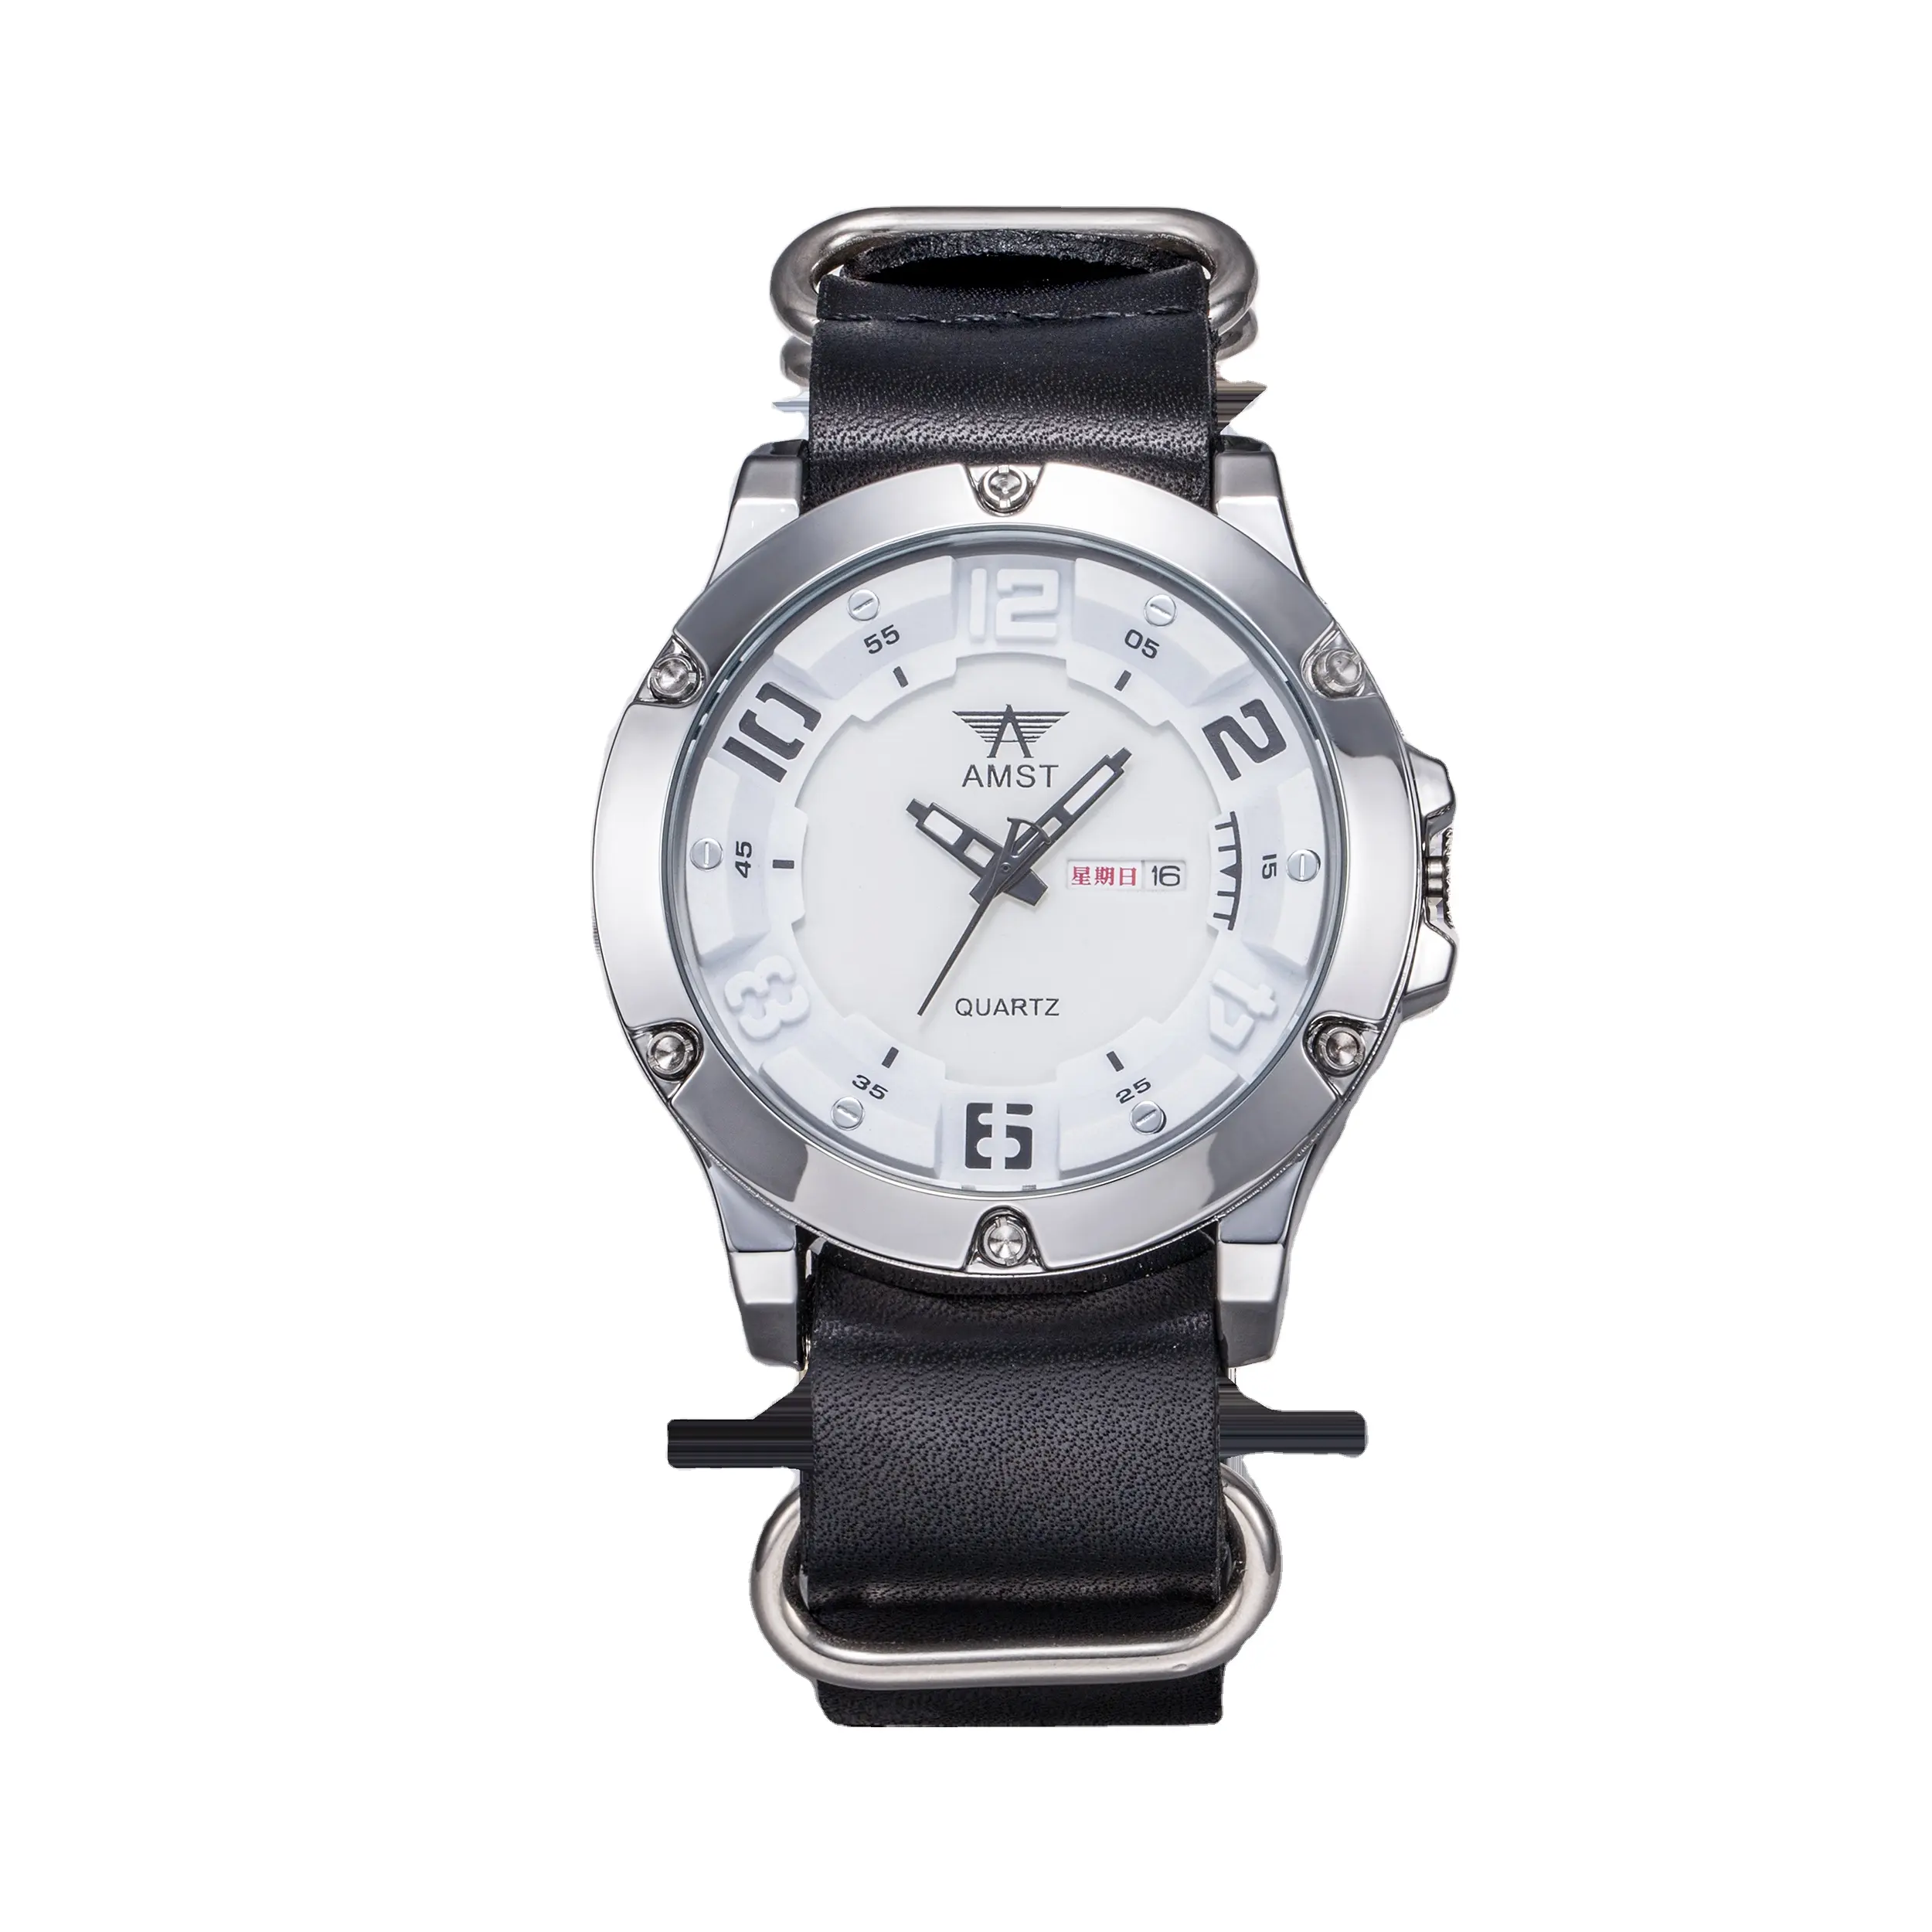 온라인 도매 실행 사용자 정의 브랜드 시계 남자 손목 럭셔리 울트라 얇은 남성 디지털 스포츠 시계